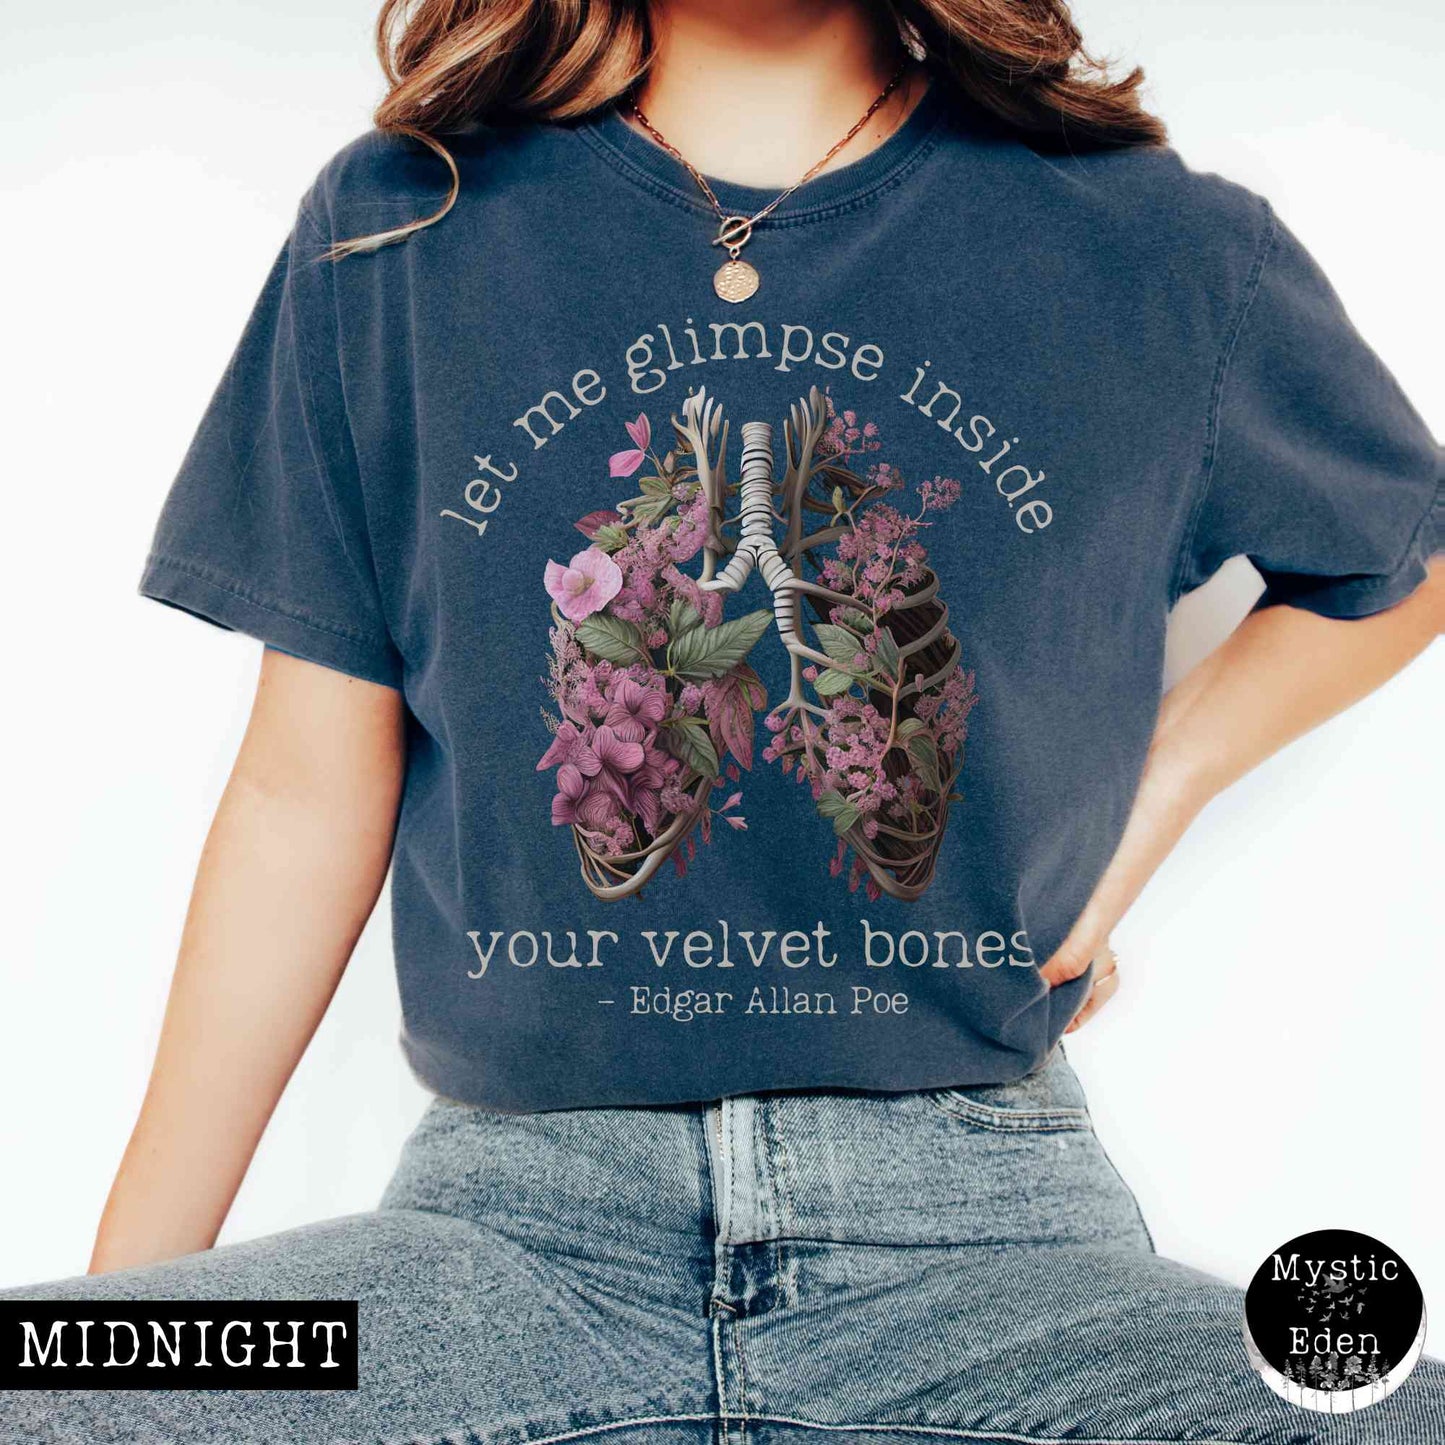 Edgar Allan Poe shirt - let me glimpse inside your velvet bones shirt